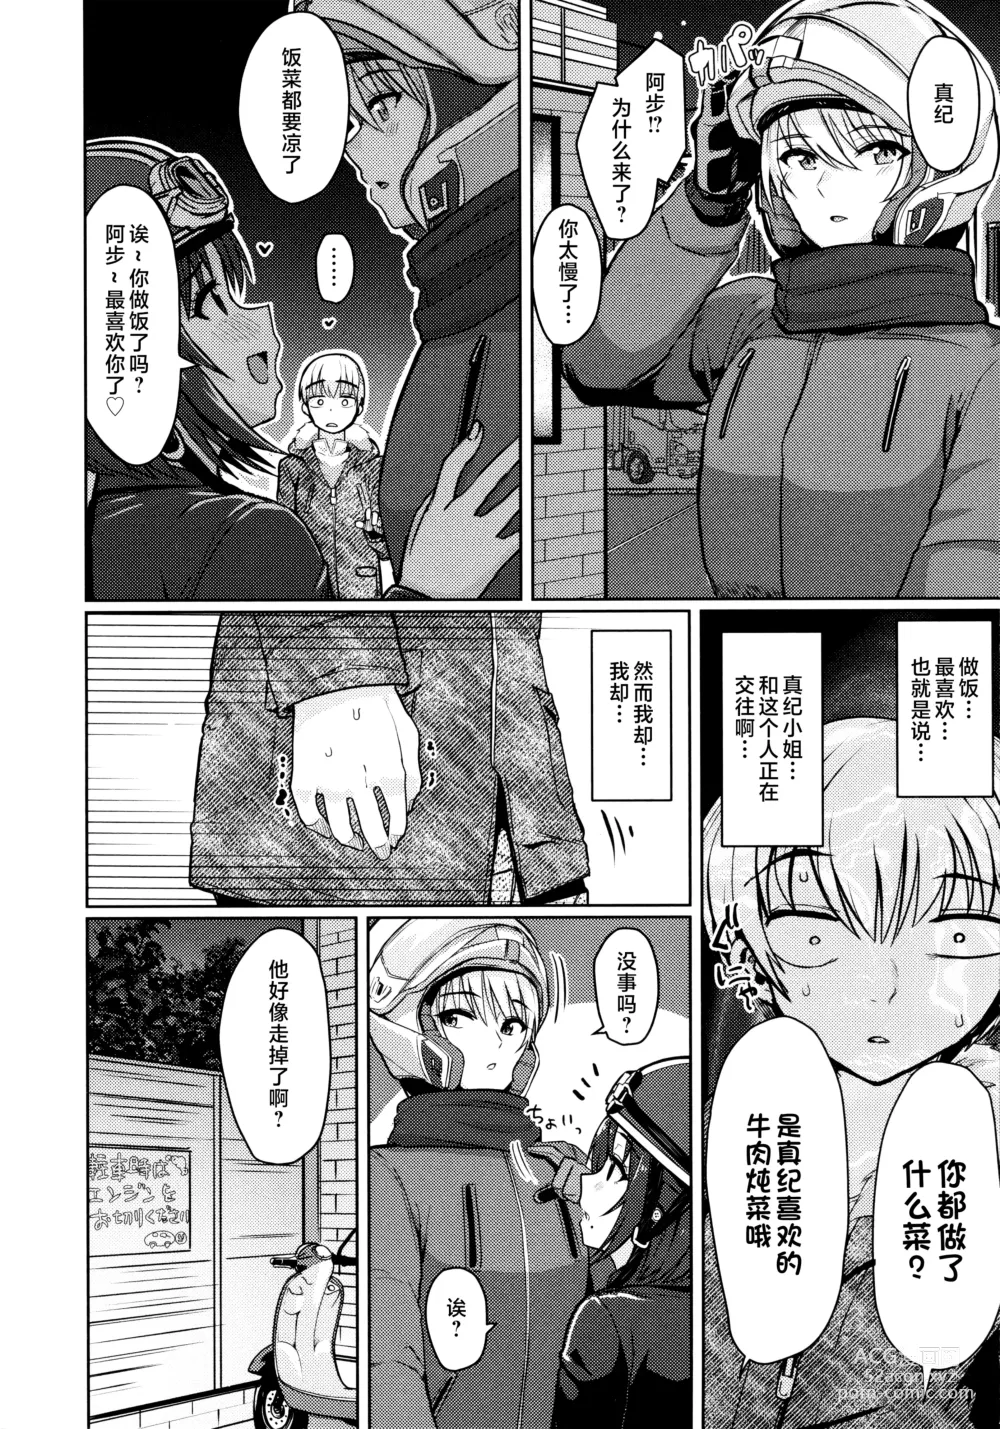 Page 24 of manga Nukunuku Seikatsu - Life Full of Sex + Melonbooks Kounyu Tokuten + Toranoana Kounyu Tokuten